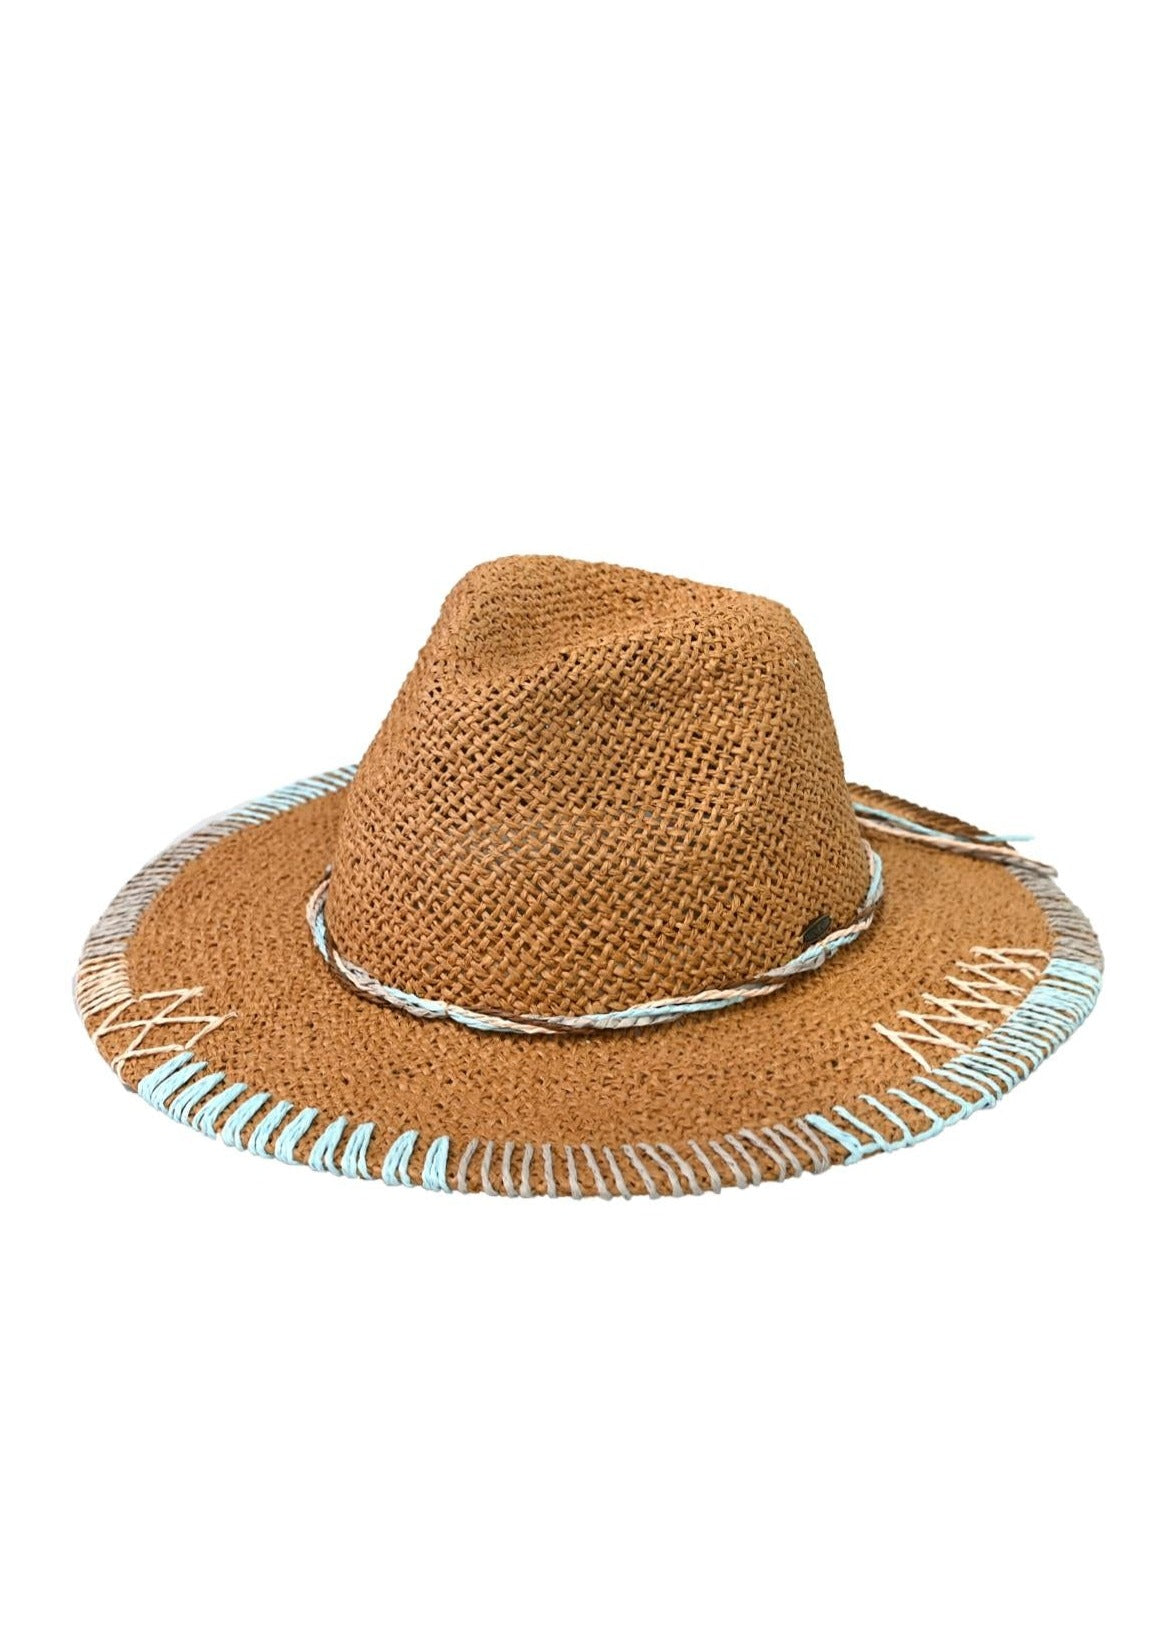 Panama Hat With Stitching